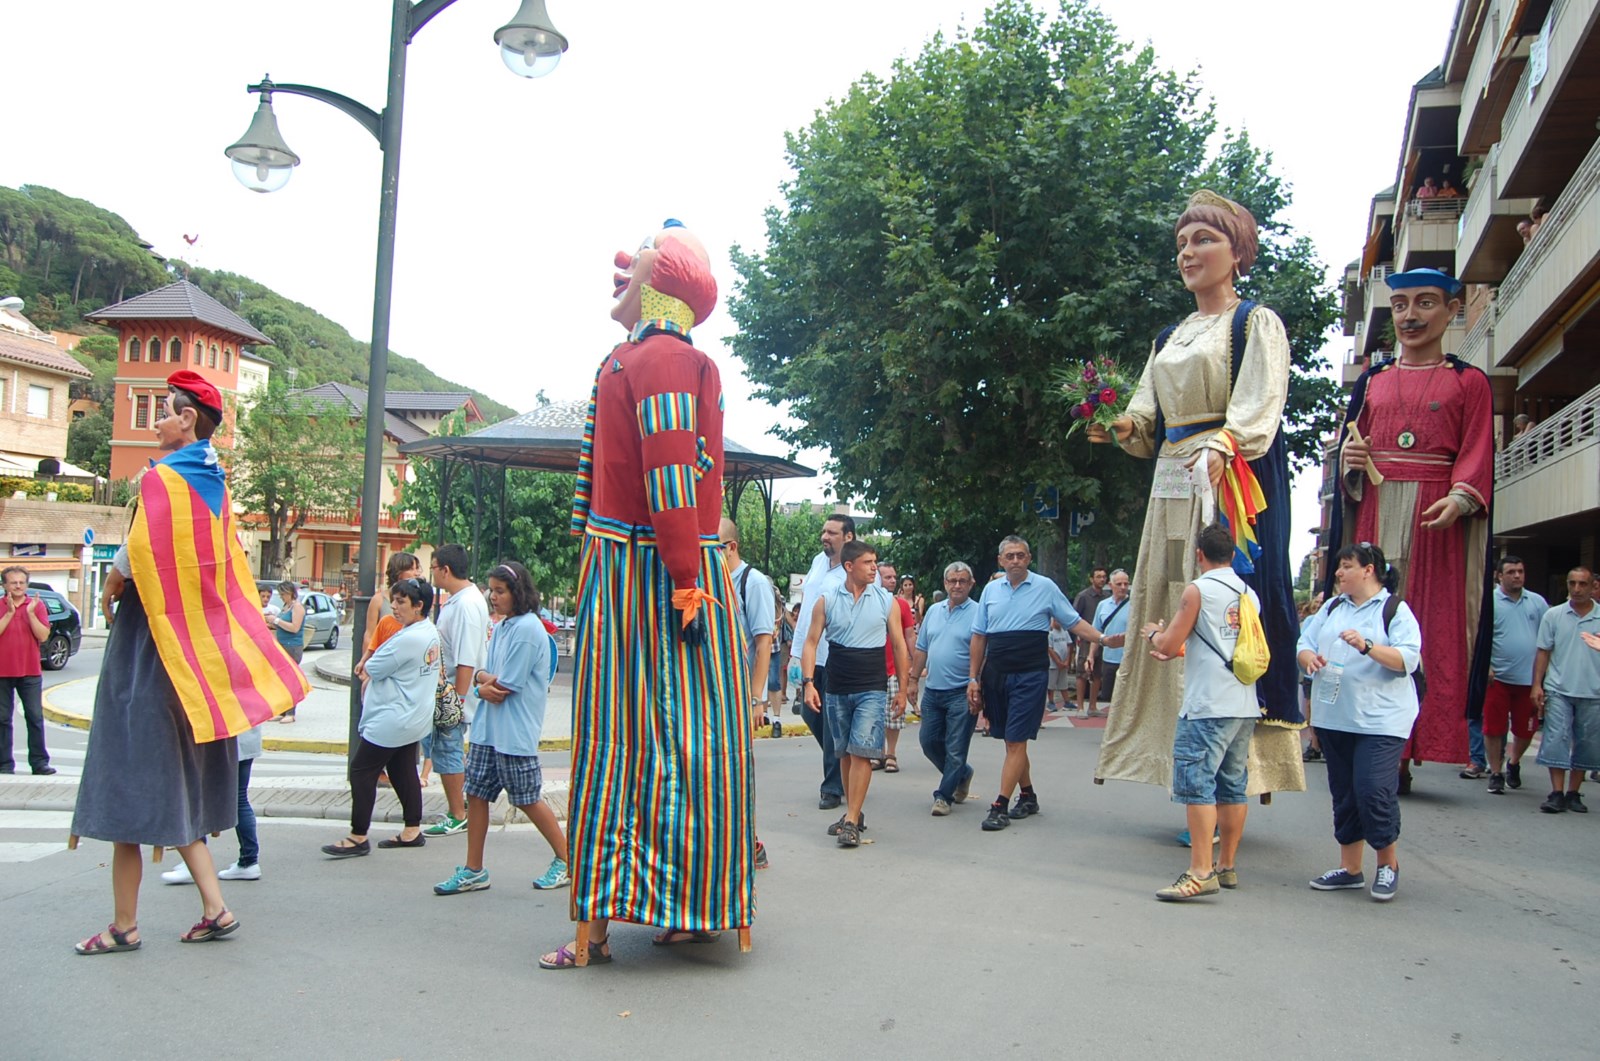 Trobada de gegants, dissabte 20 de juliol, pels carrers de la vila